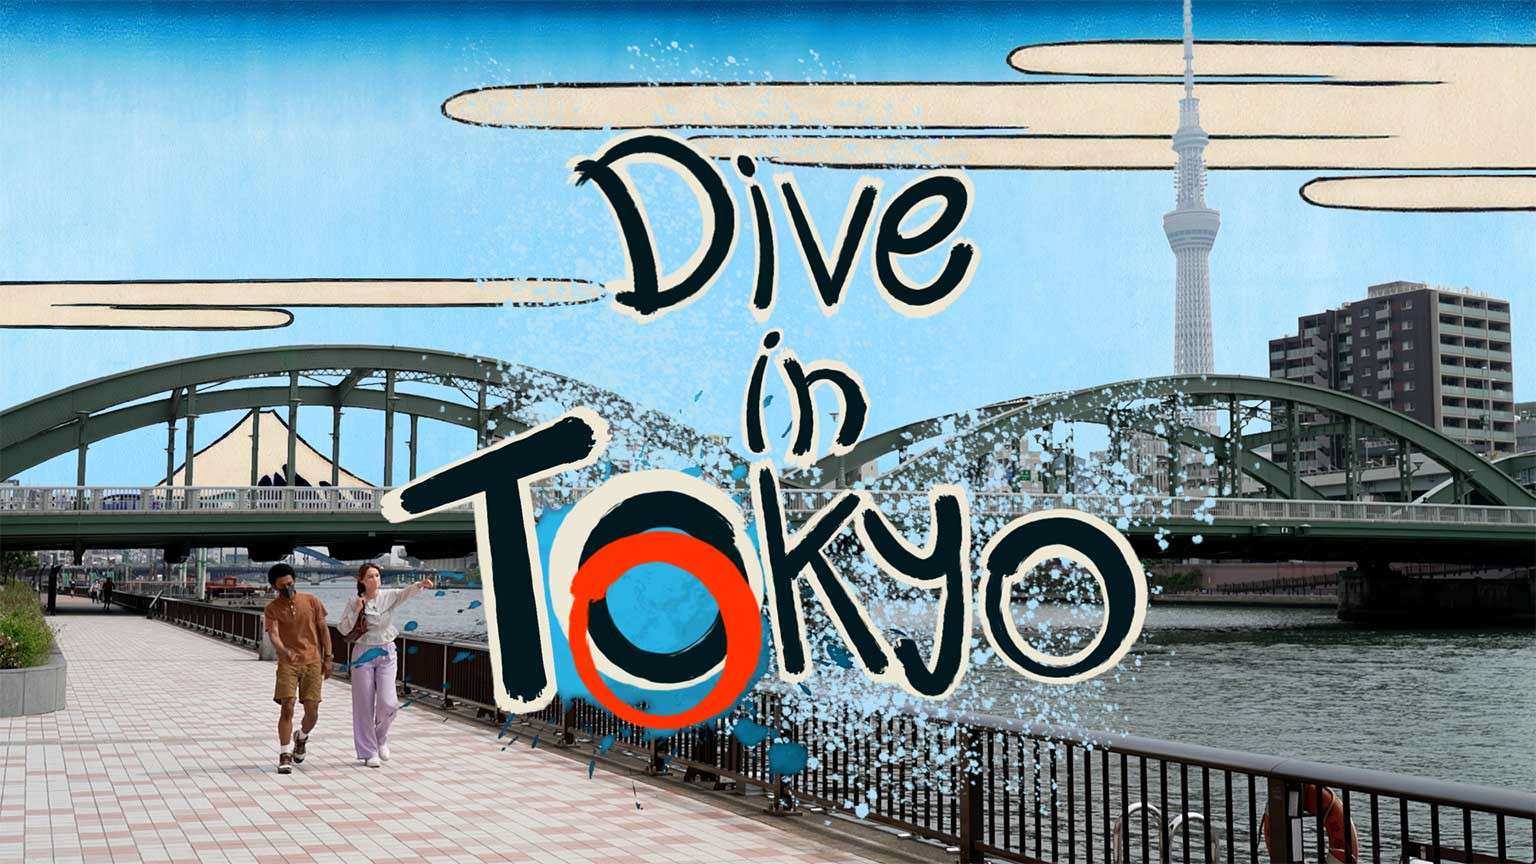 東京深度探索
Dive in Tokyo